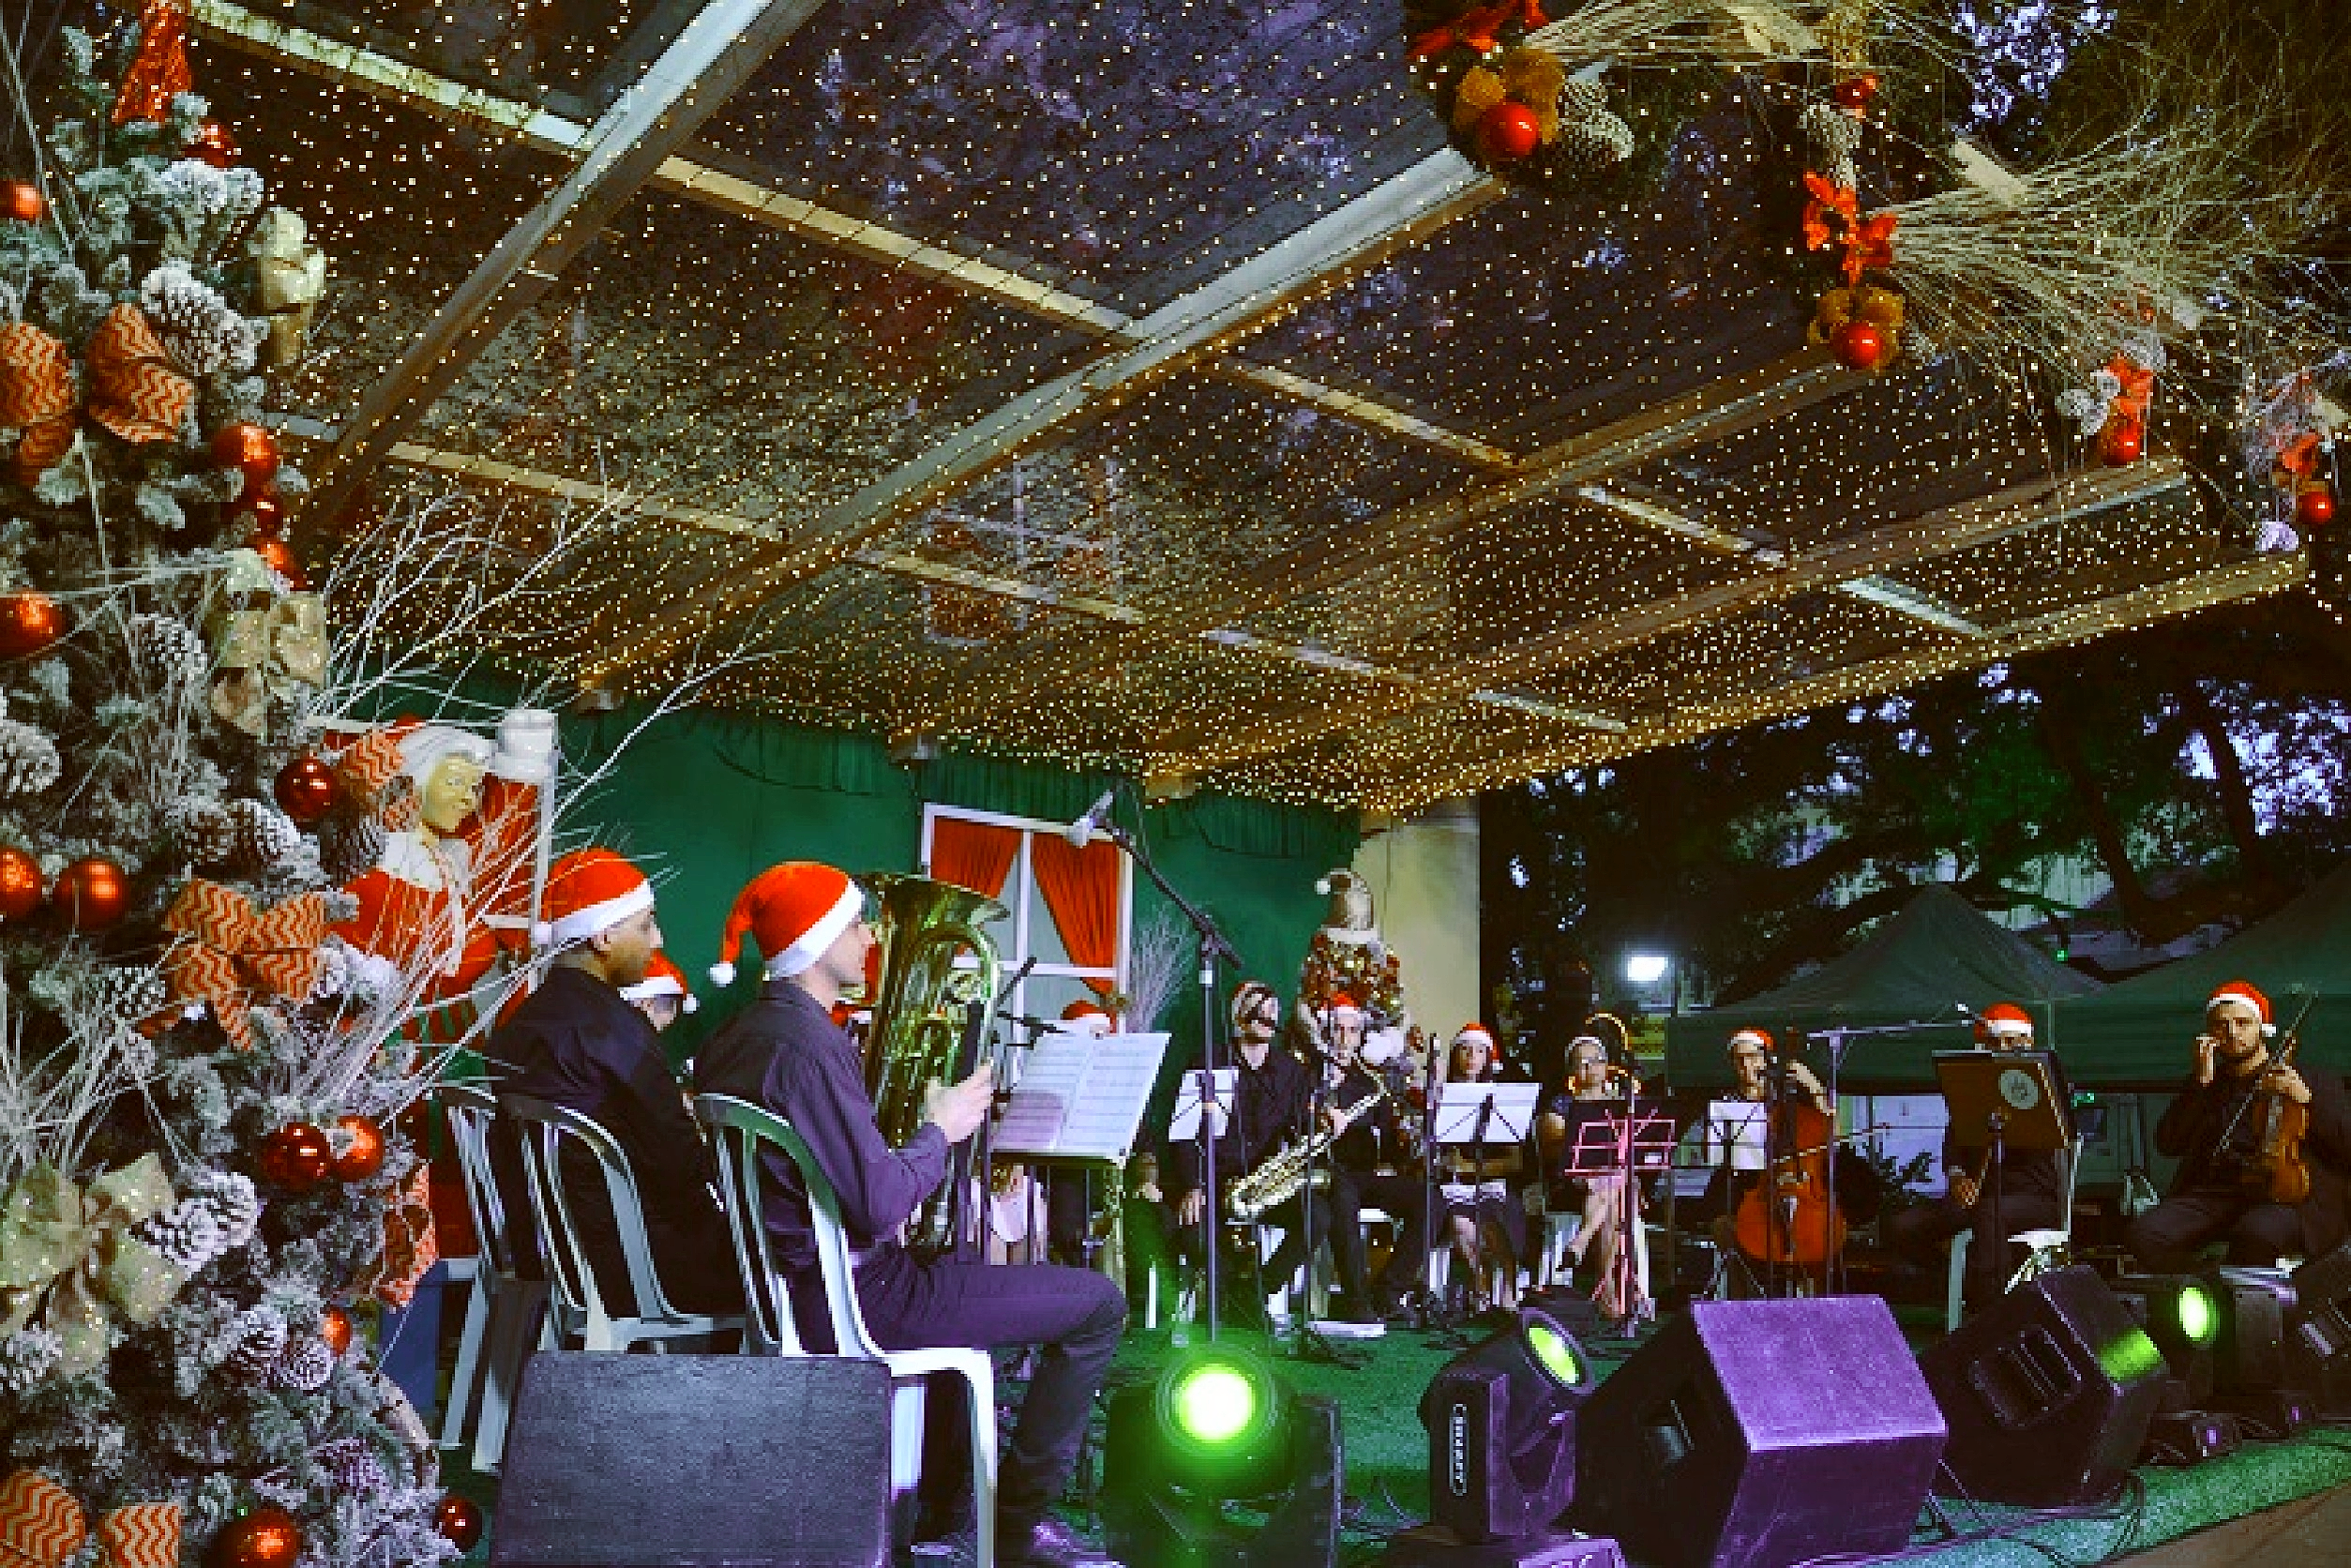 Chegada do Papai Noel e apresentações natalinas marcam o início do Natal em Camboriú